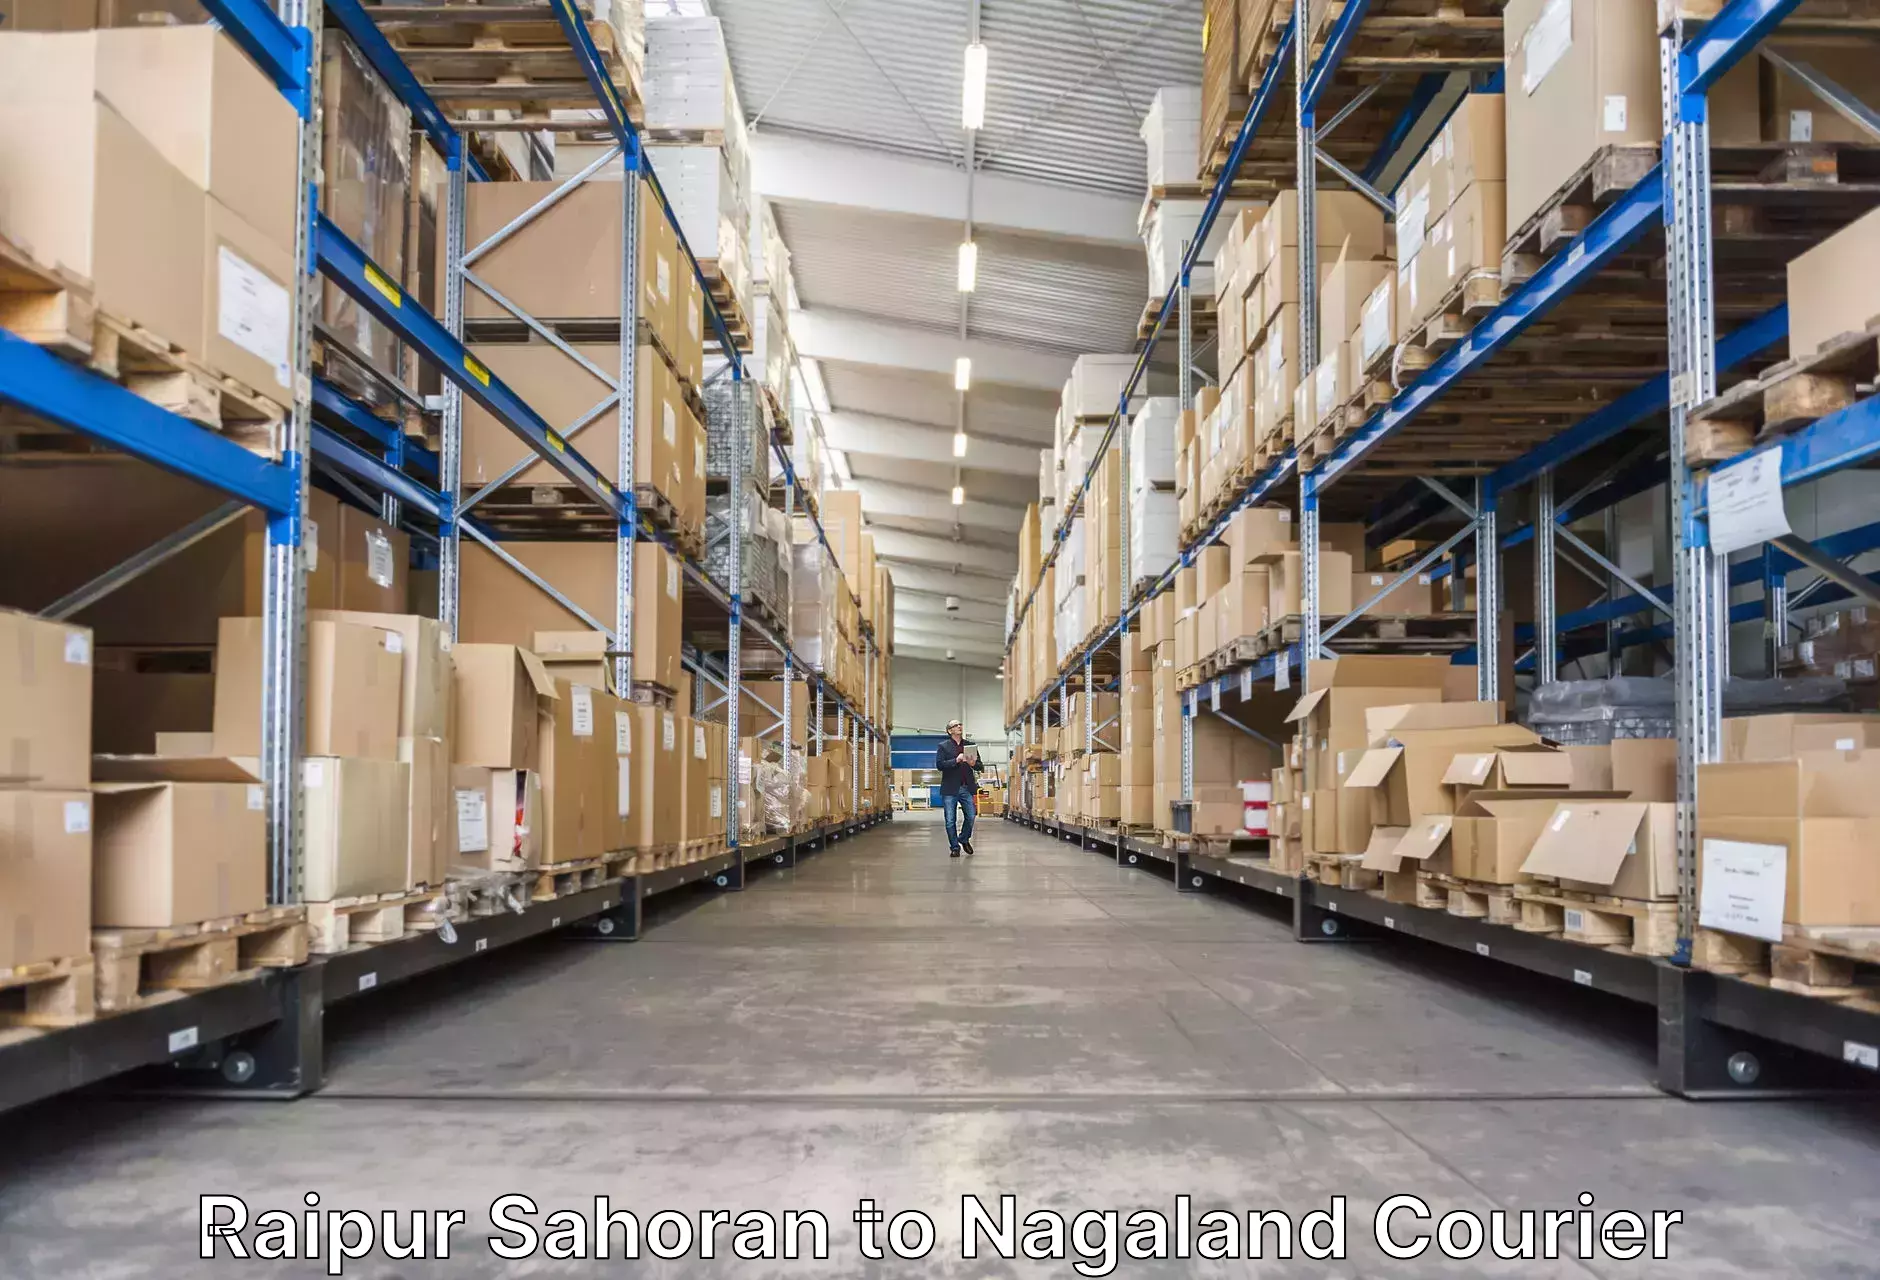 Professional baggage transport Raipur Sahoran to Dimapur